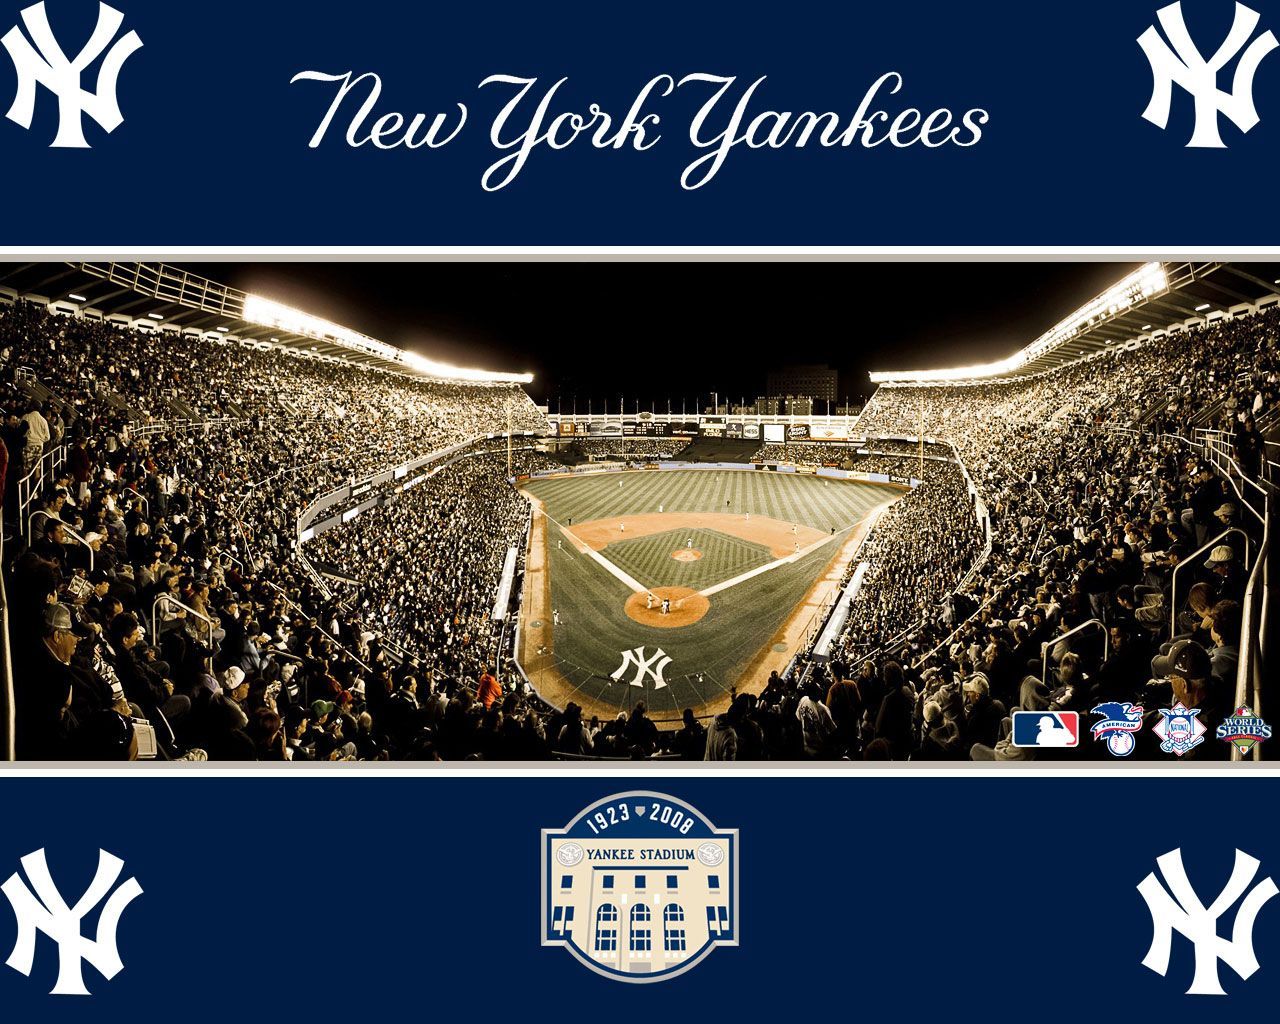 Giants Stadium nổi tiếng hay New York Yankees đều chỉ có thể tìm thấy tại bộ sưu tập hình nền Yankees đầy đủ nhất! Những thiết kế độc đáo với những hình ảnh đặc trưng của đội bóng hàng đầu nước Mỹ sẽ khiến cho bạn cảm thấy tự hào khi sử dụng máy tính hoặc điện thoại của mình.